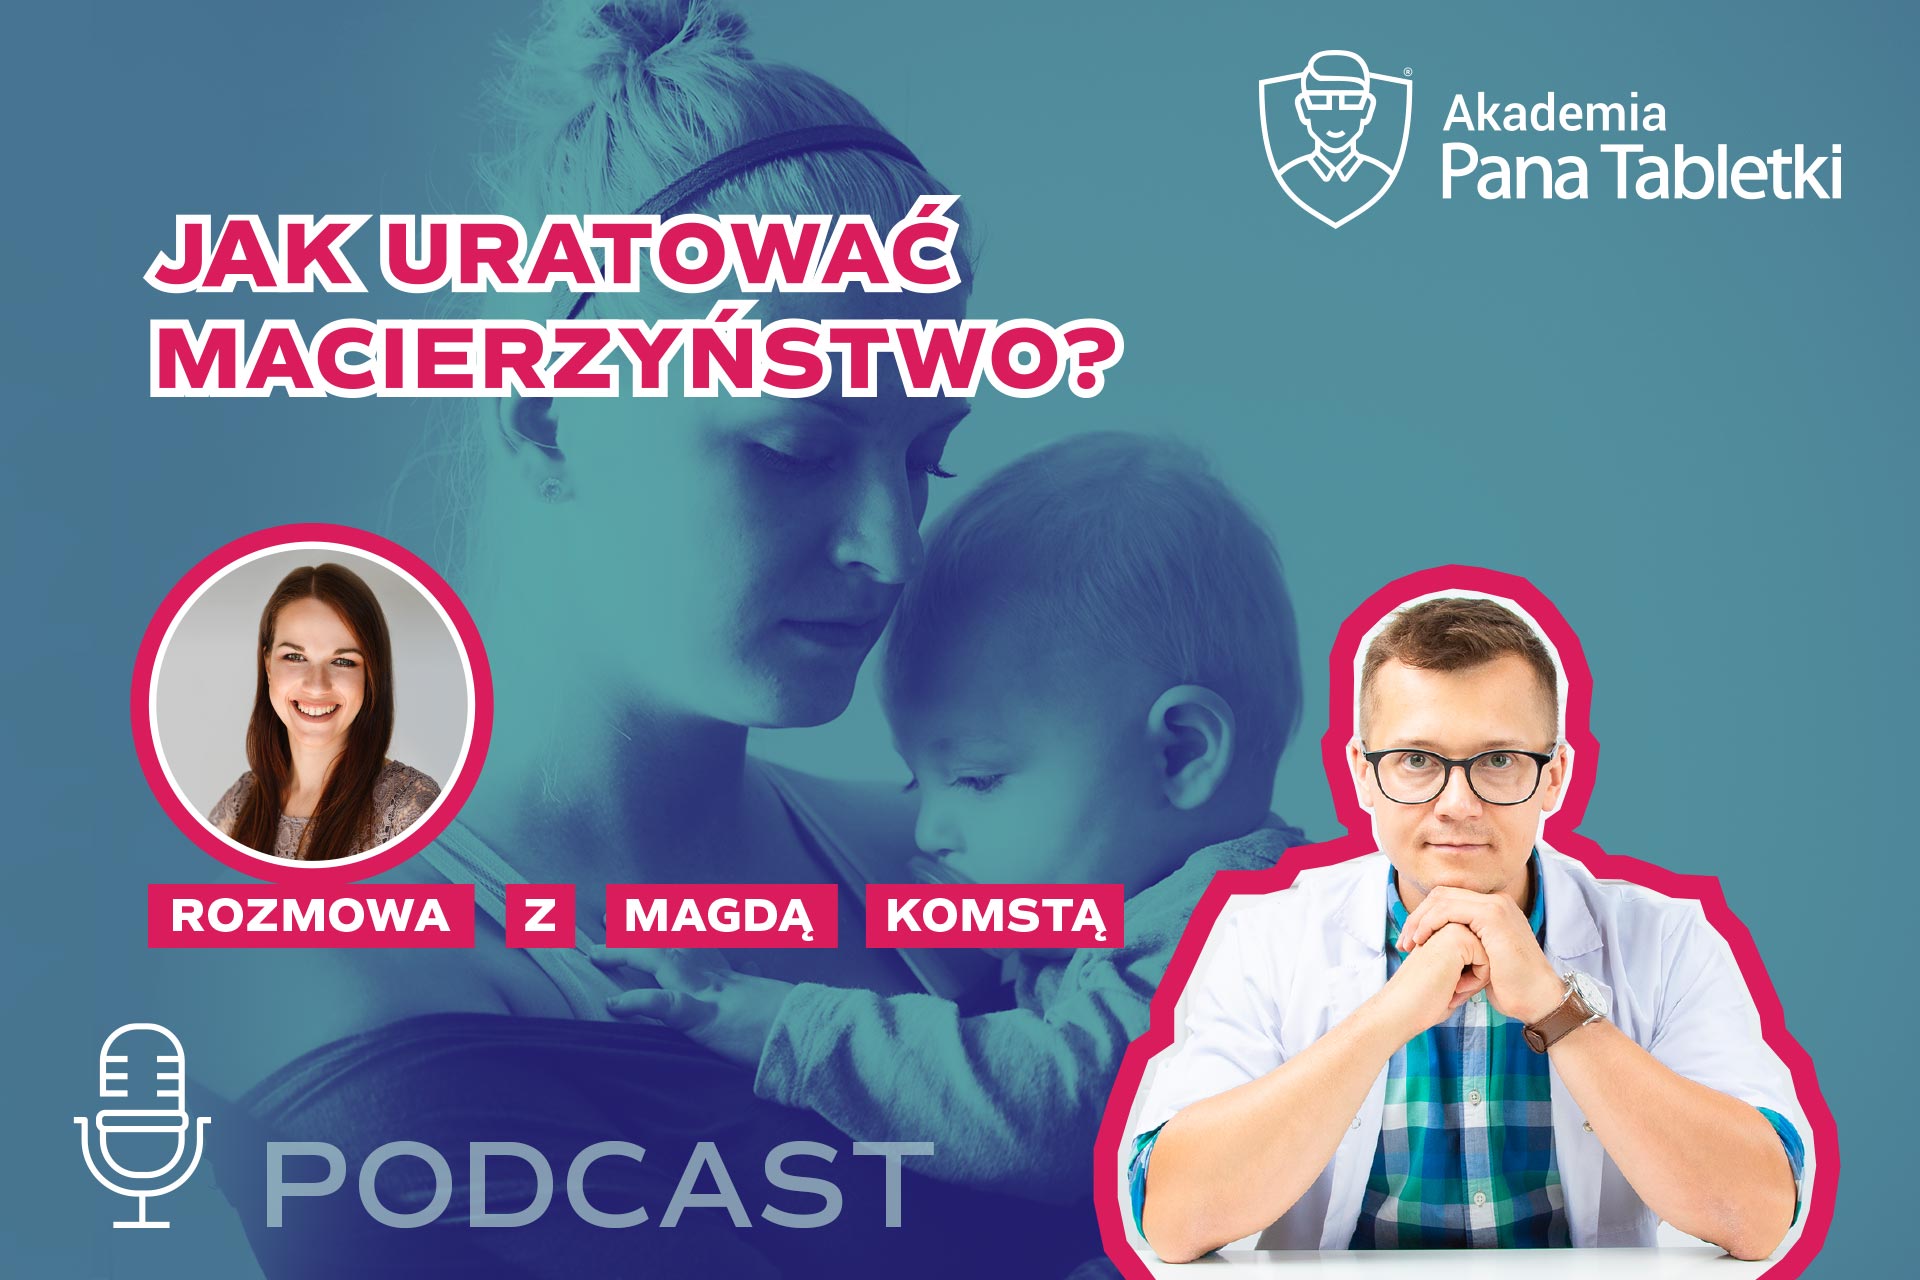 Jak uratować macierzyństwo? - ciekawa rozmowa z Magdą Komstą. Podcast 37